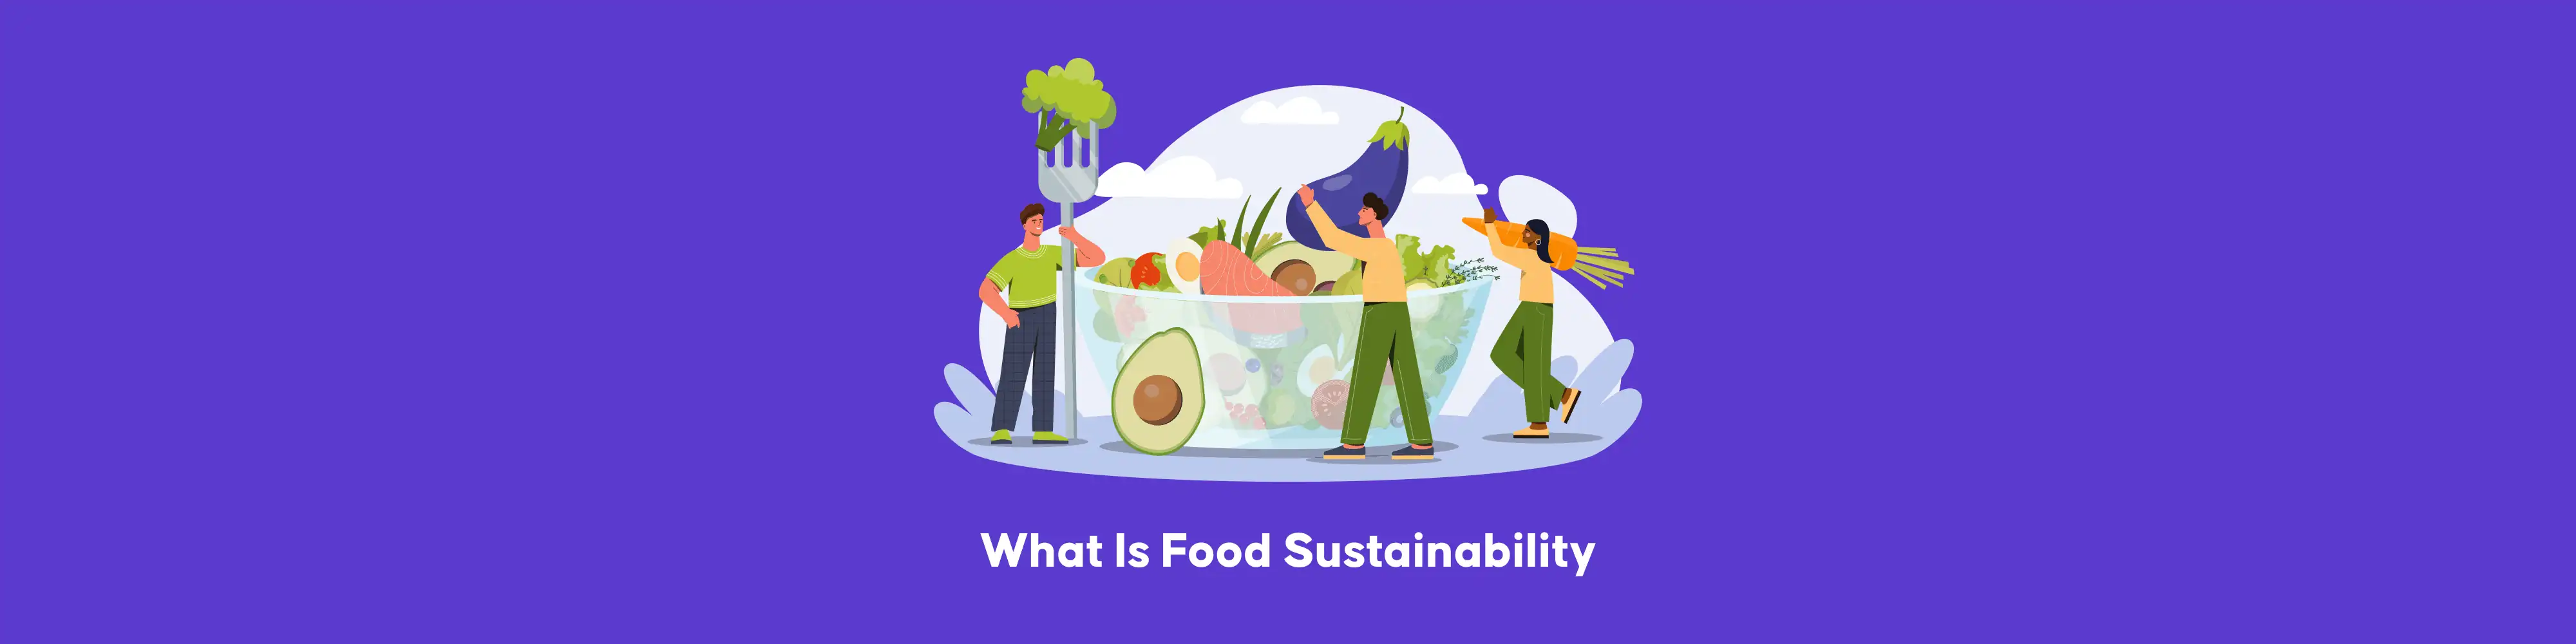 پایداری غذایی چیست | راه حل های جدید برای چالش جهانی